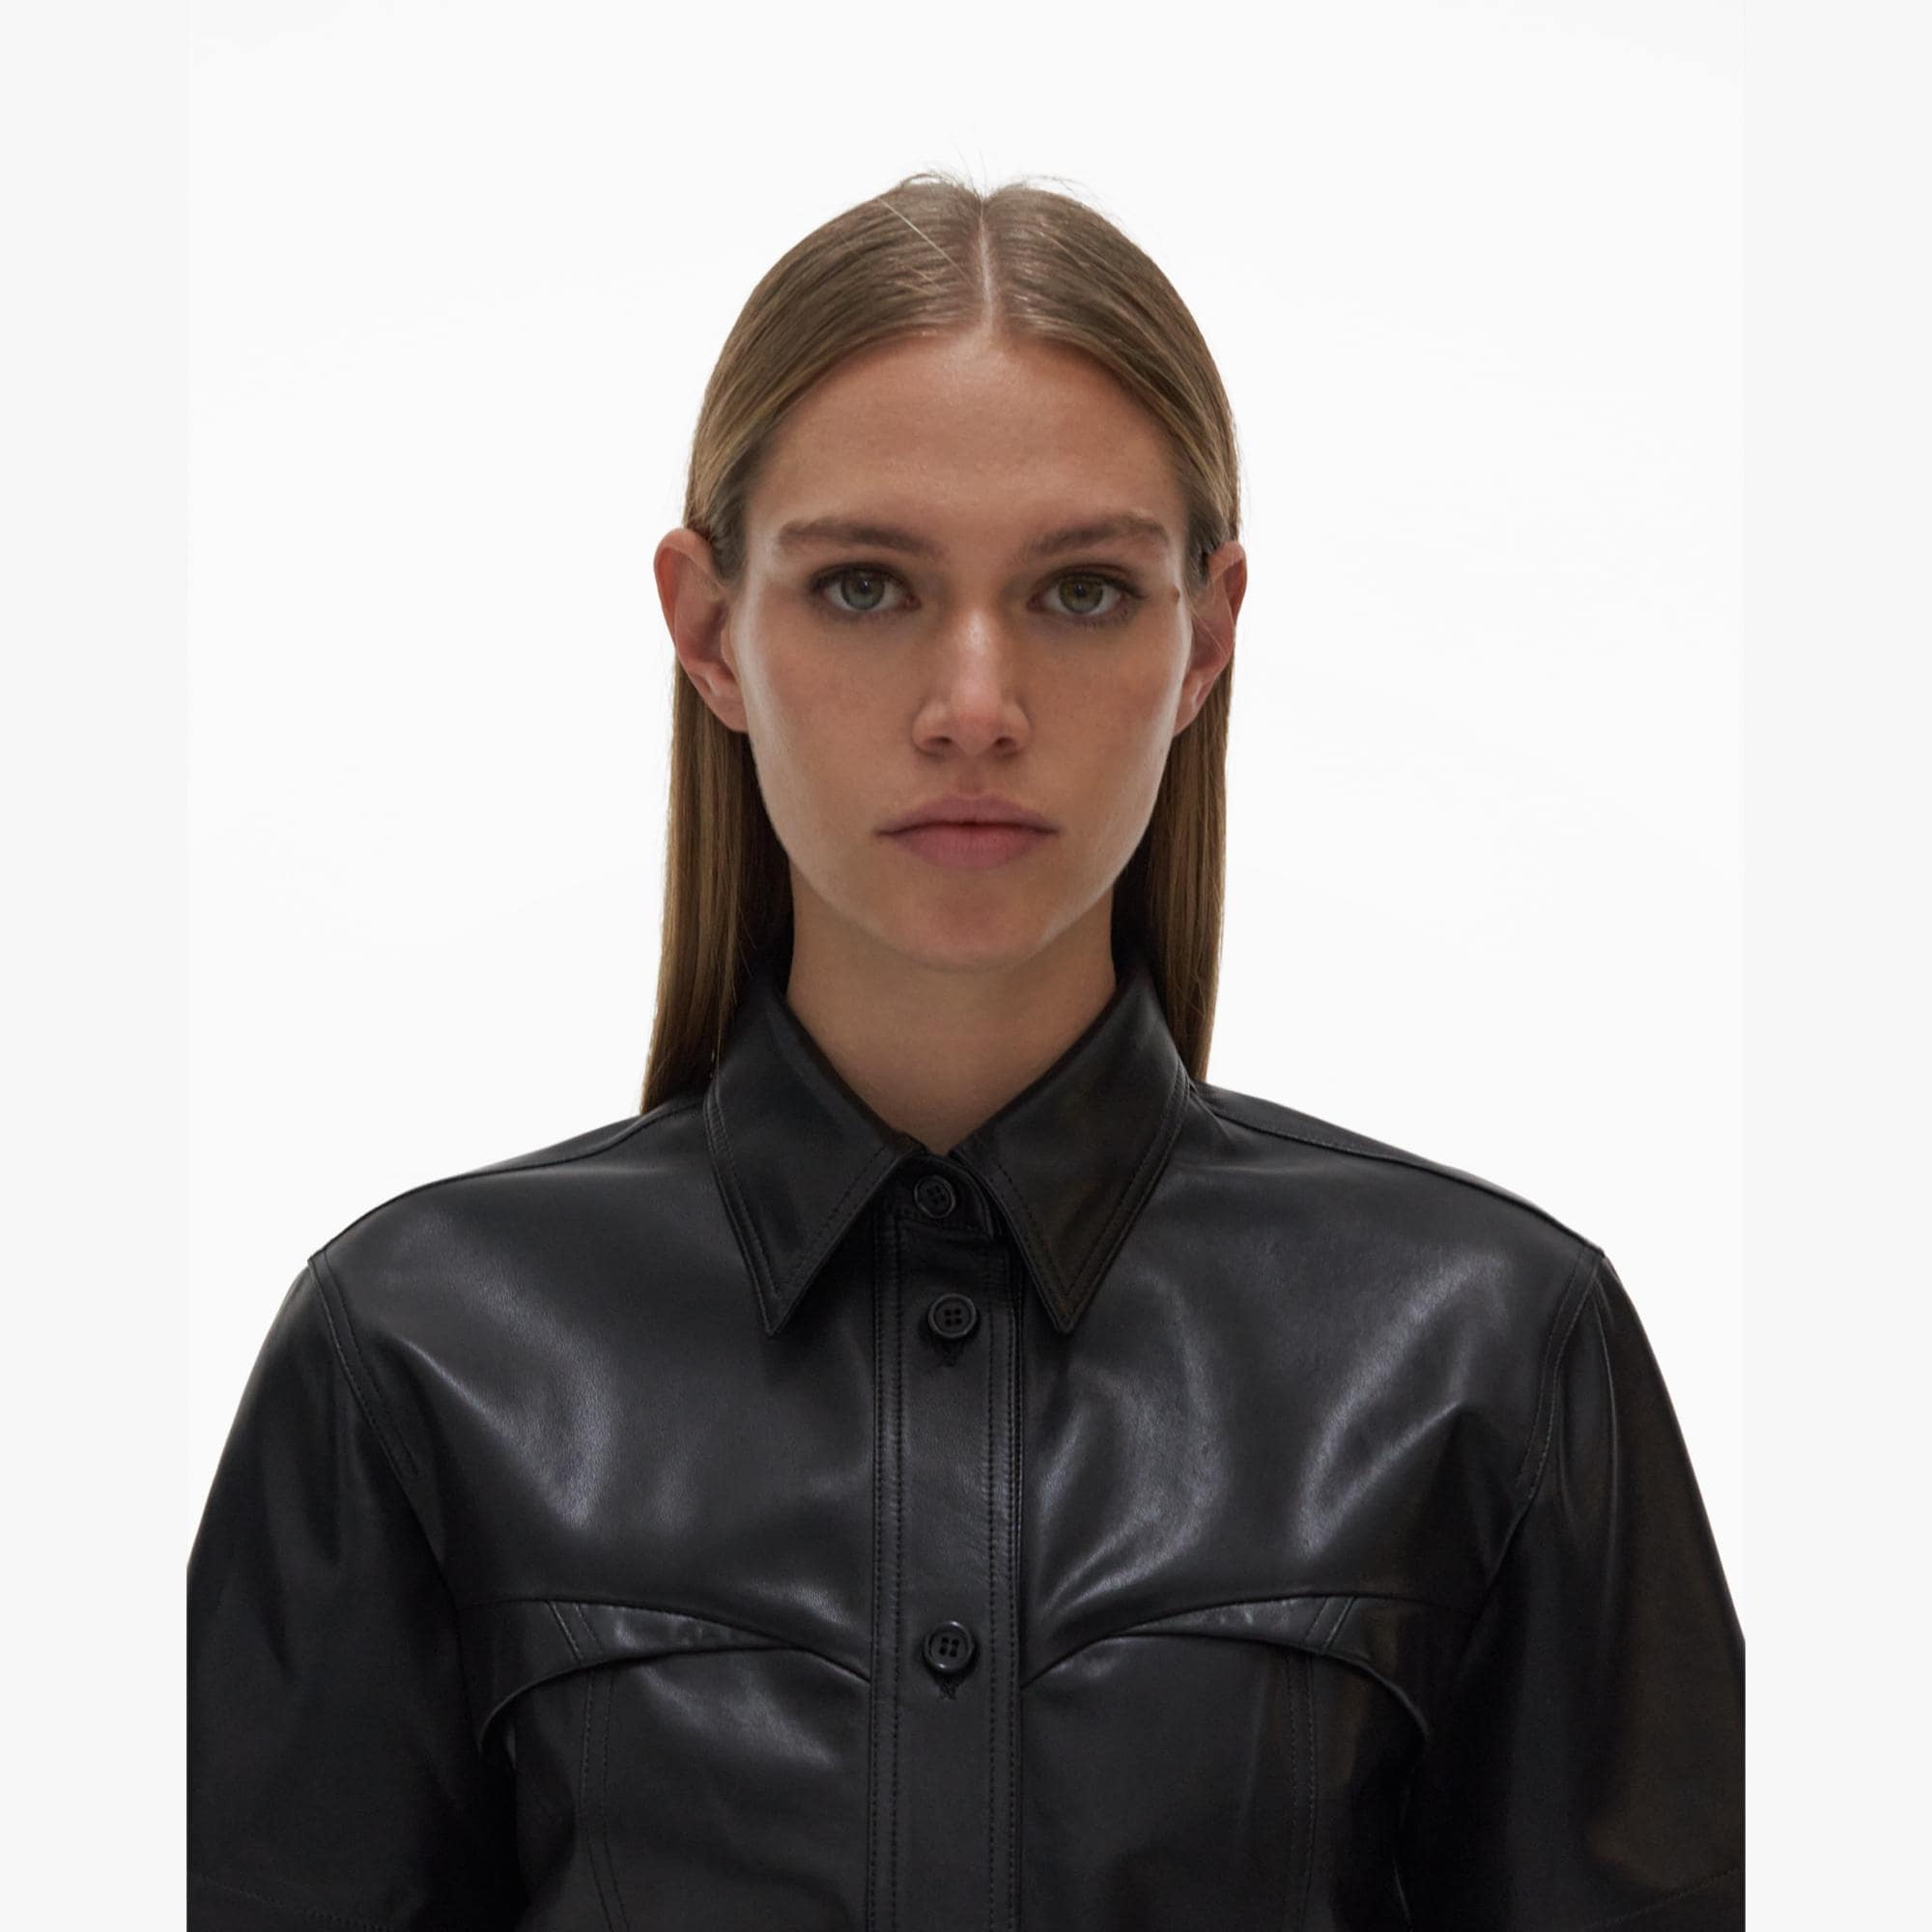 Helmut Lang Leather Shirt | WWW.HELMUTLANG.COM | Helmut Lang